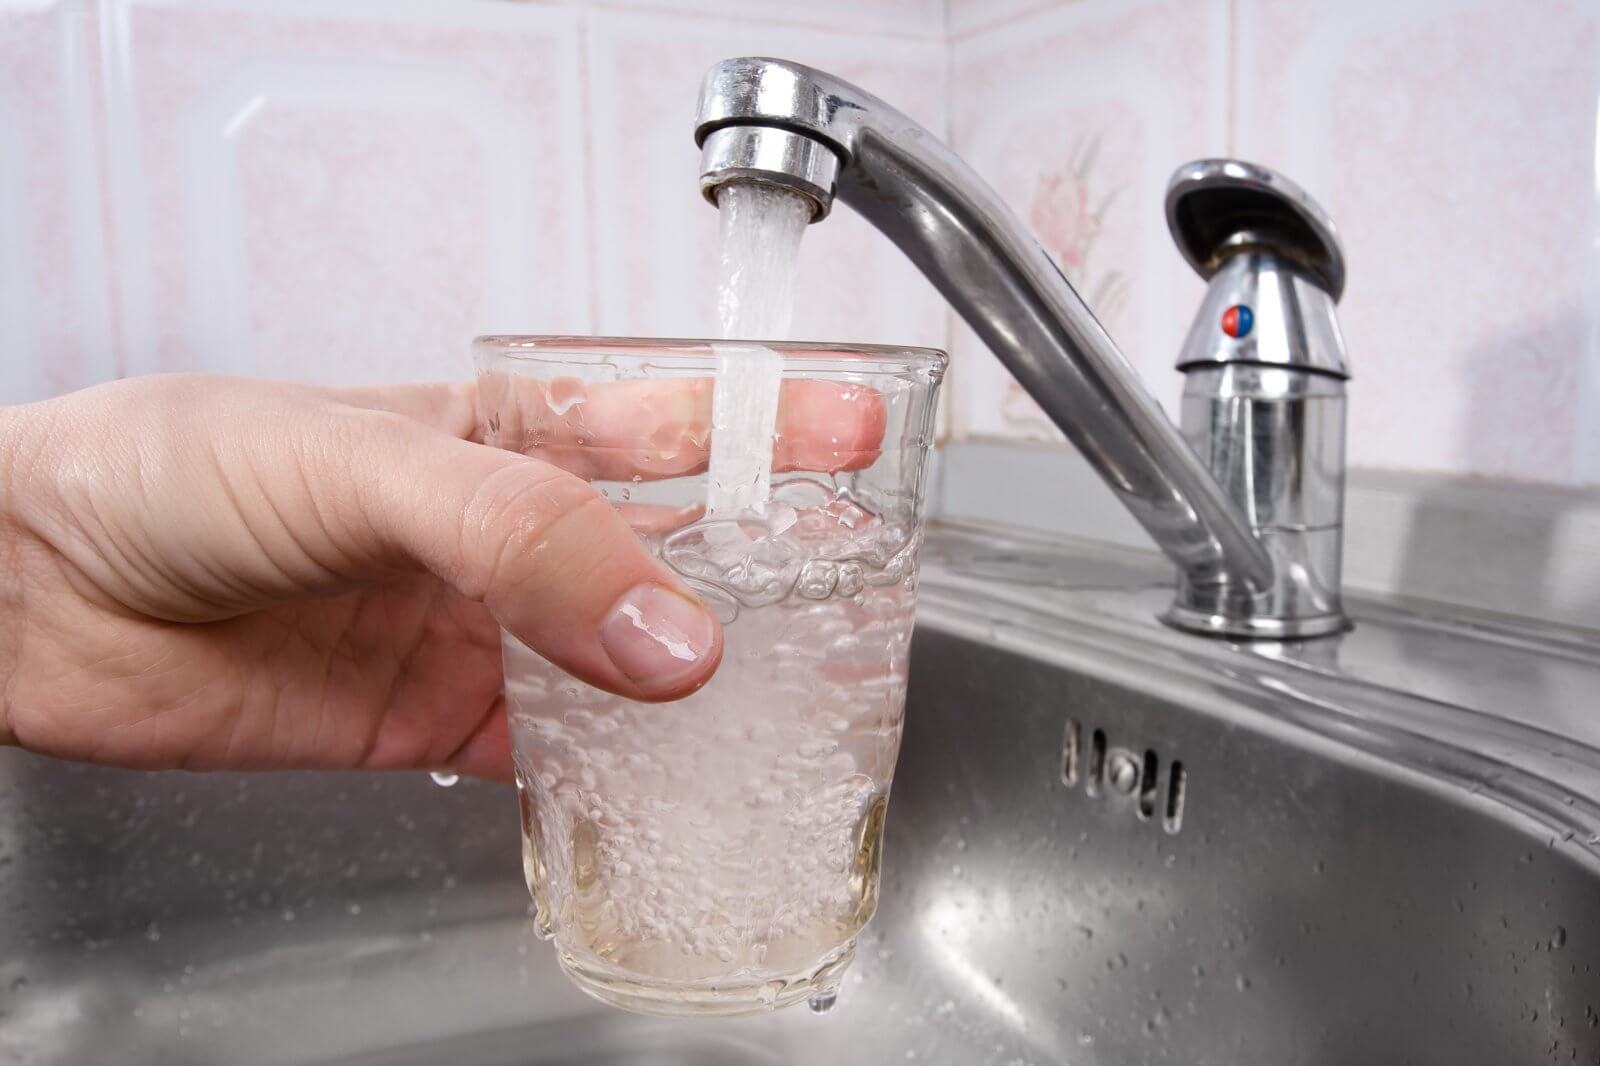 Que é perigoso água da torneira?